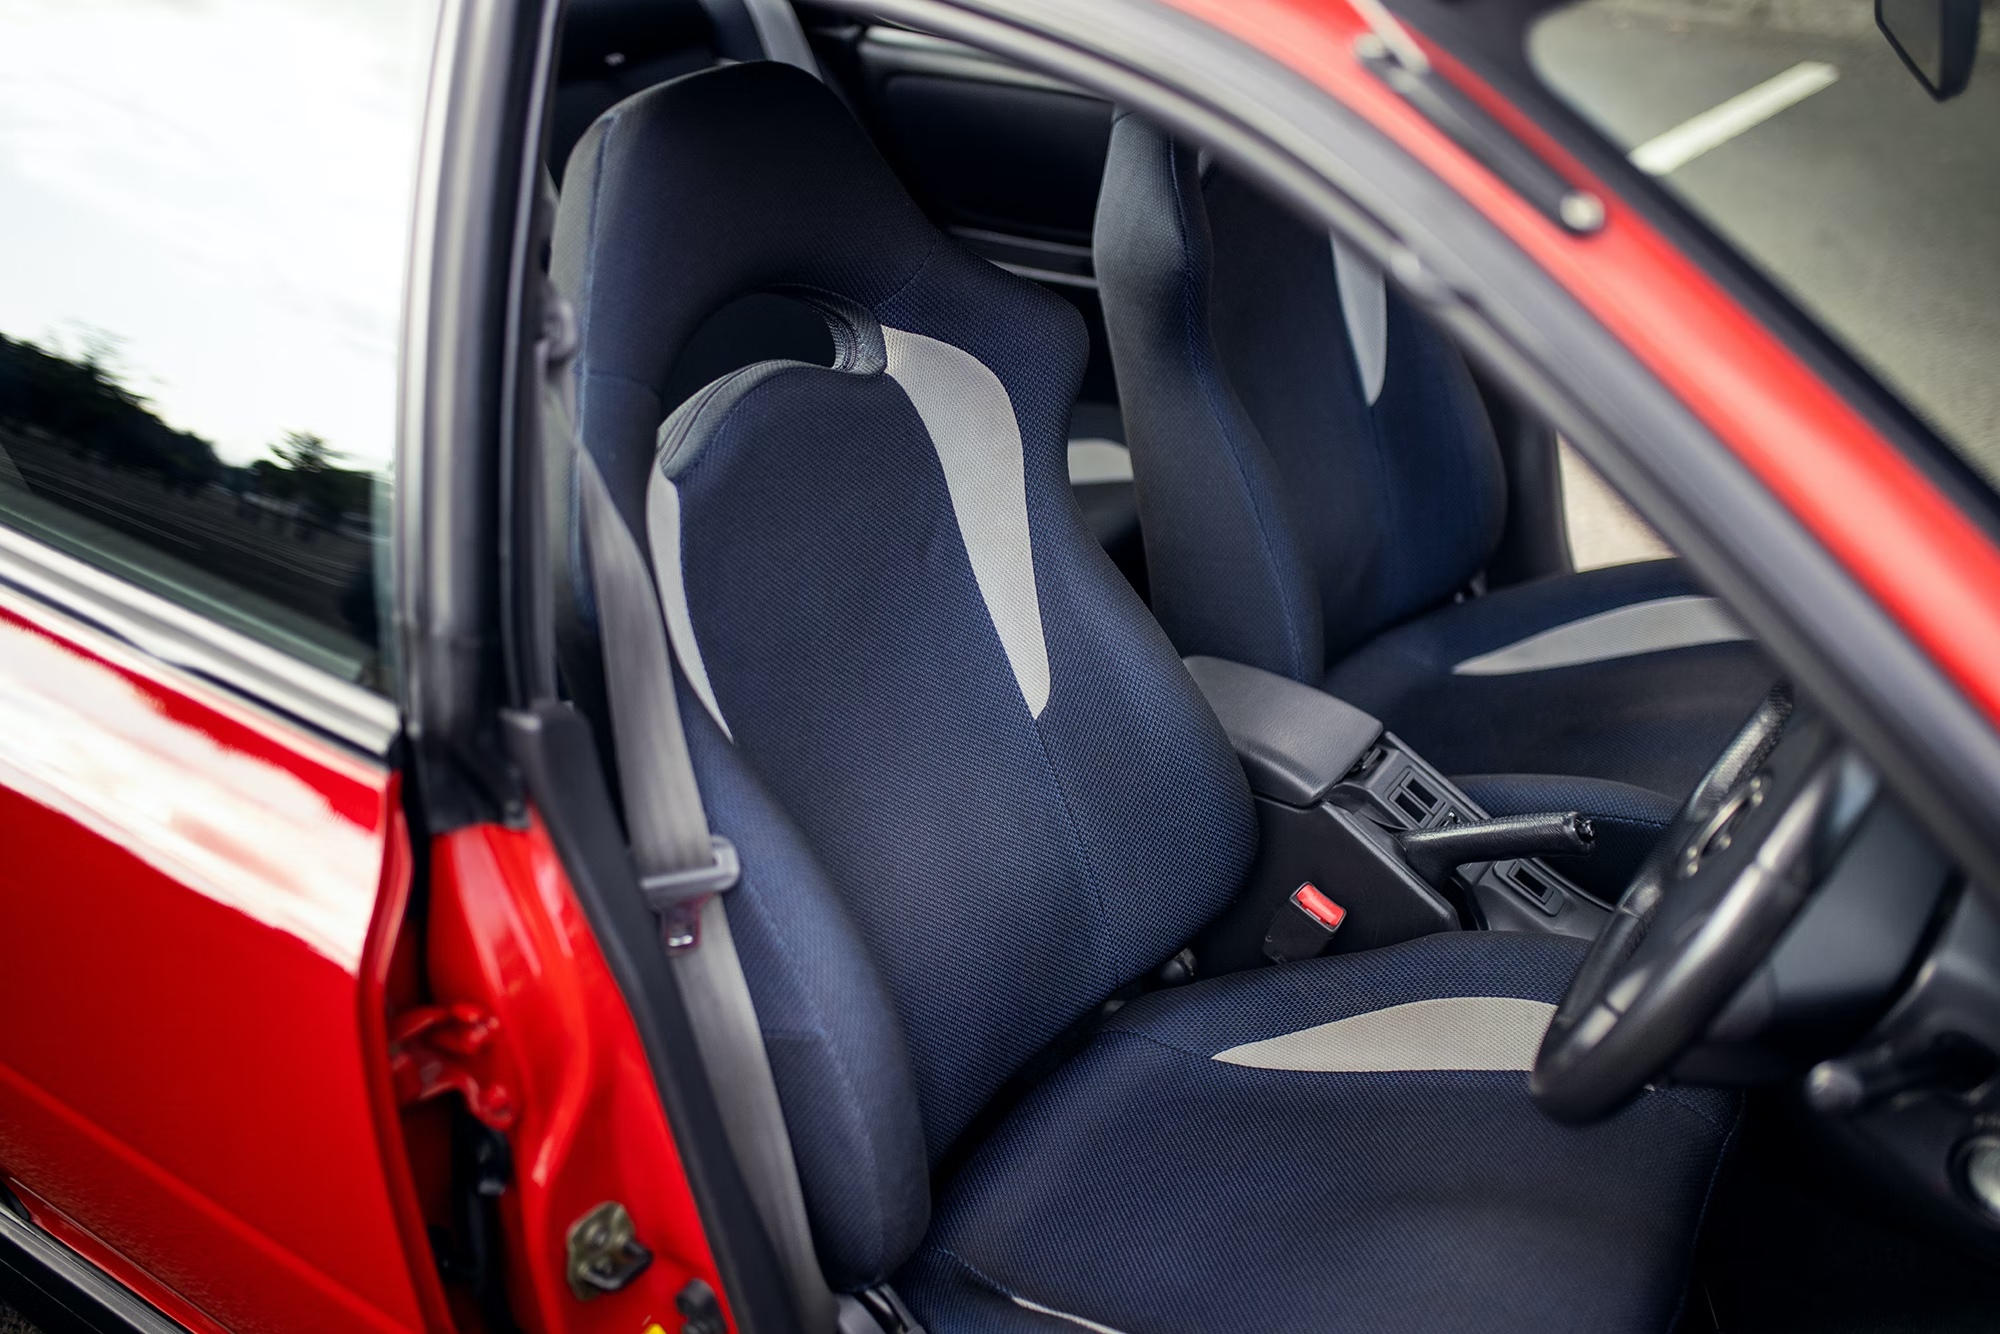 Subaru Impreza Turbo seats